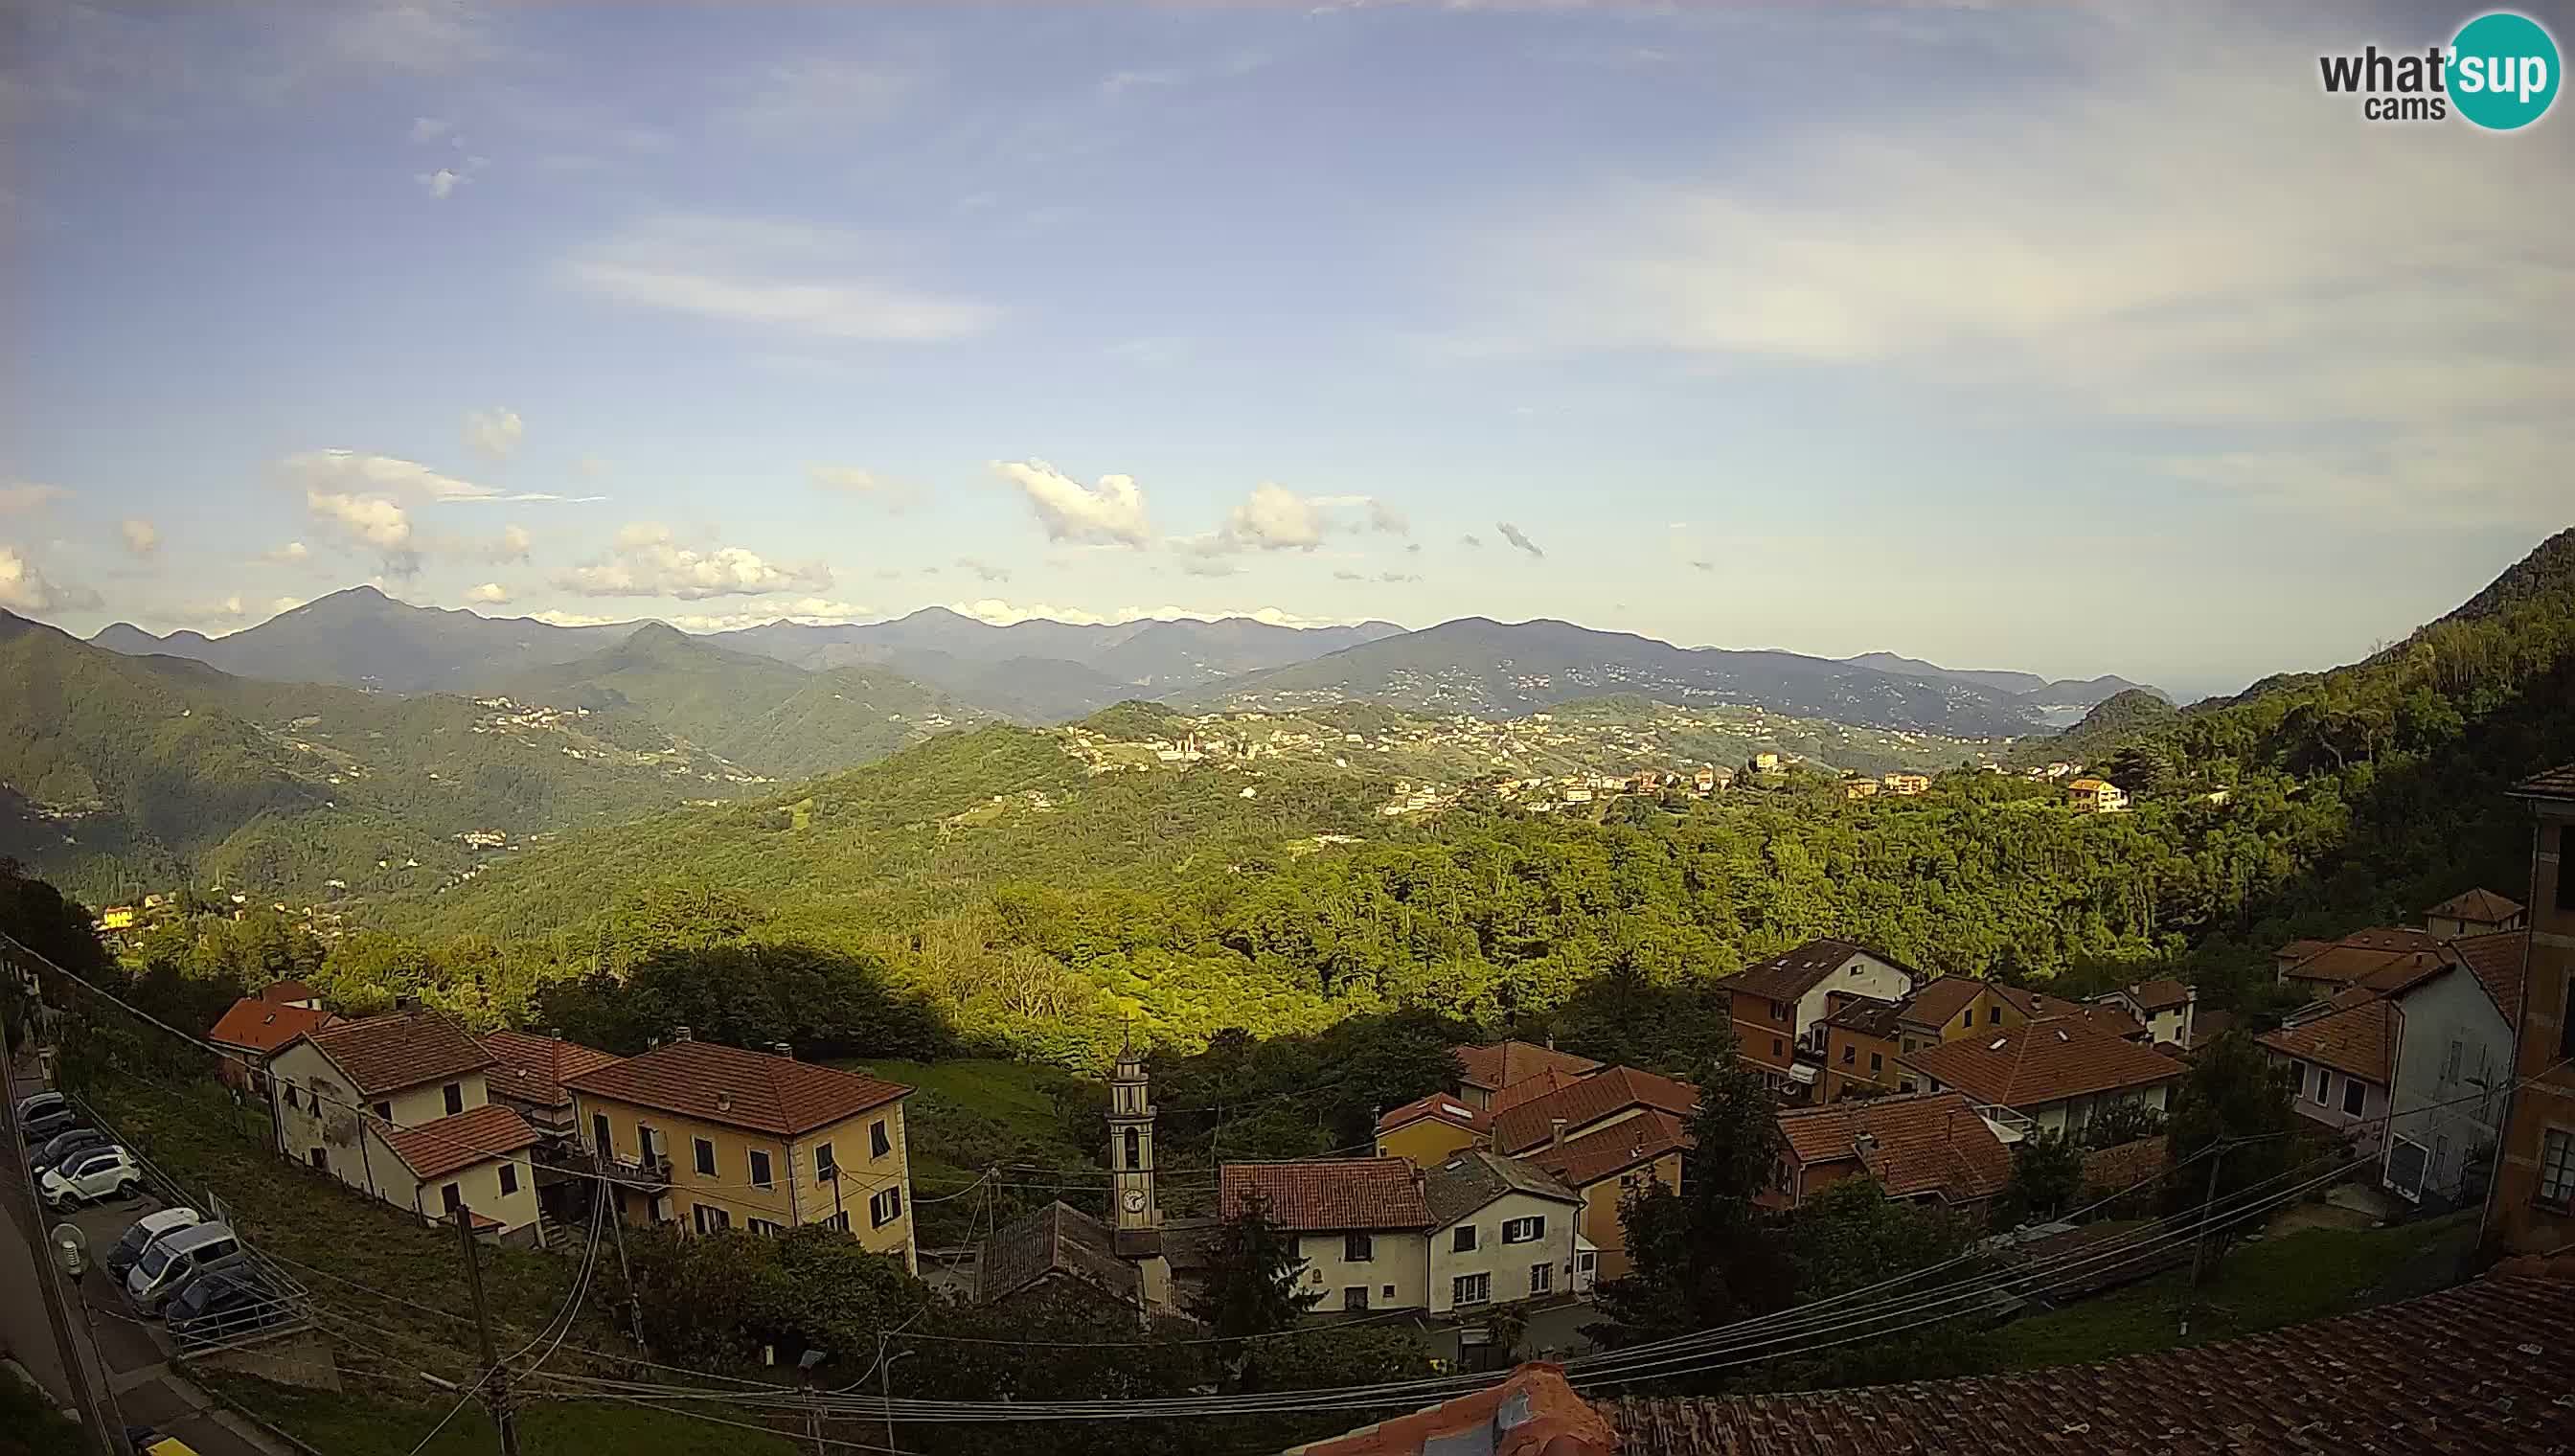 Live Chiavari webcam Villa Oneto – Leivi